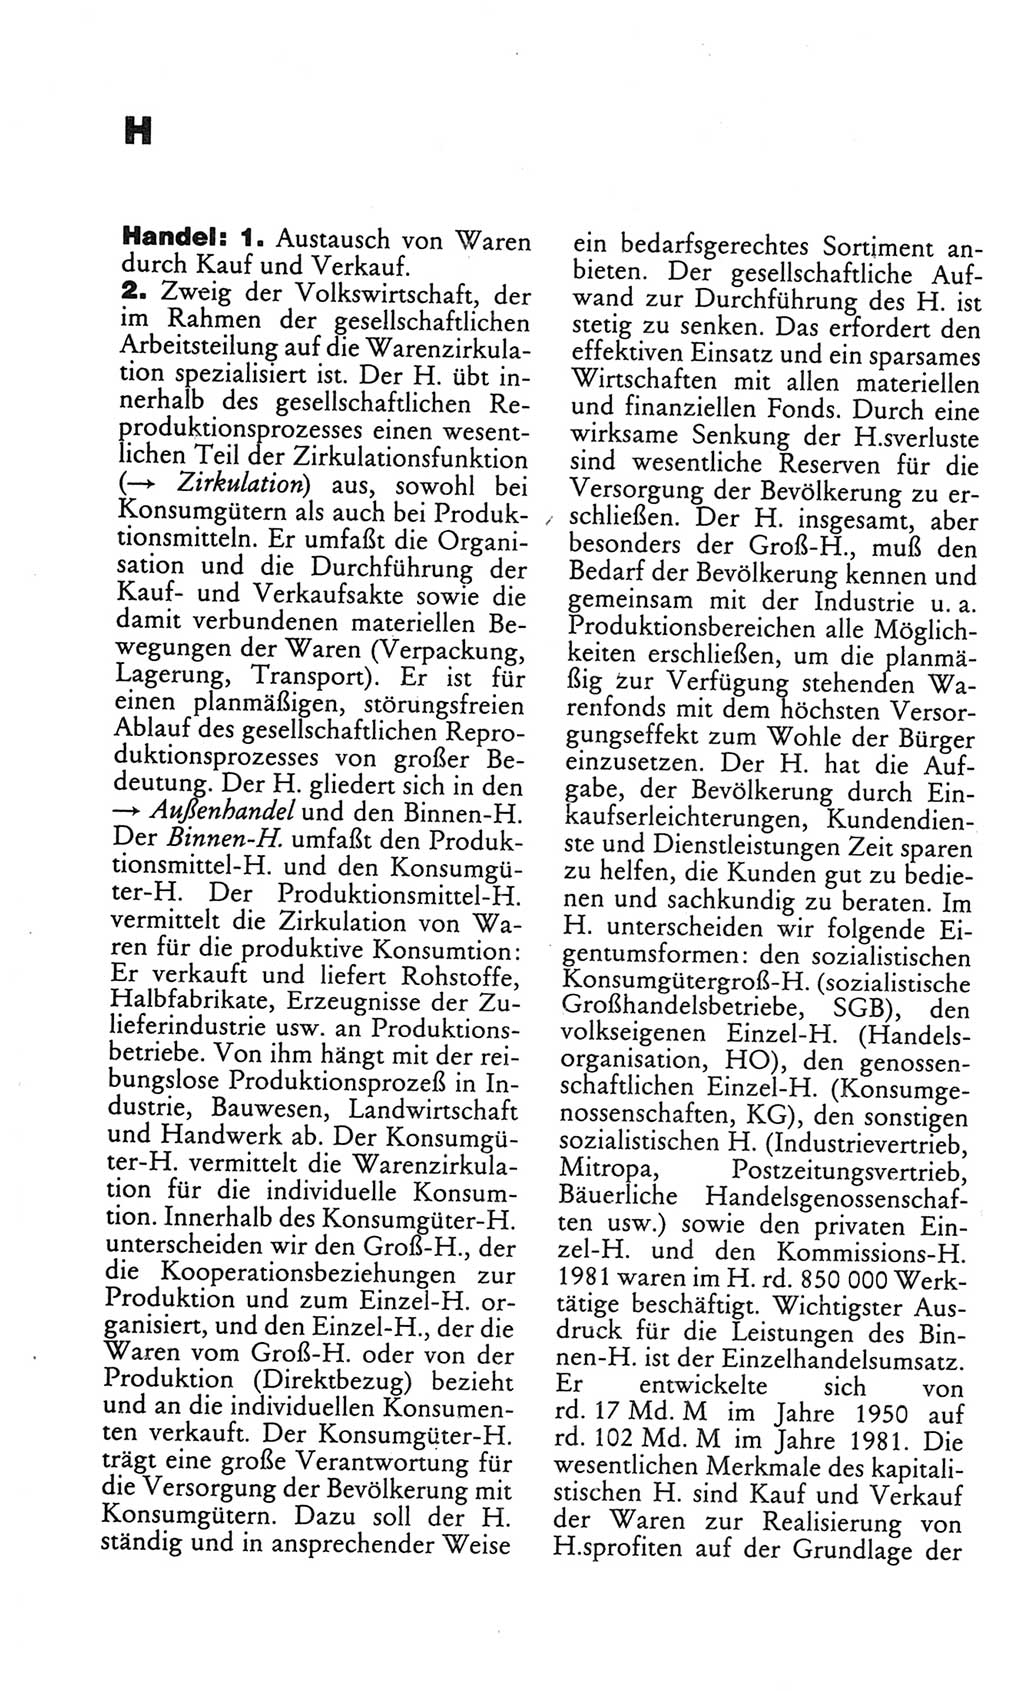 Kleines politisches Wörterbuch [Deutsche Demokratische Republik (DDR)] 1986, Seite 368 (Kl. pol. Wb. DDR 1986, S. 368)